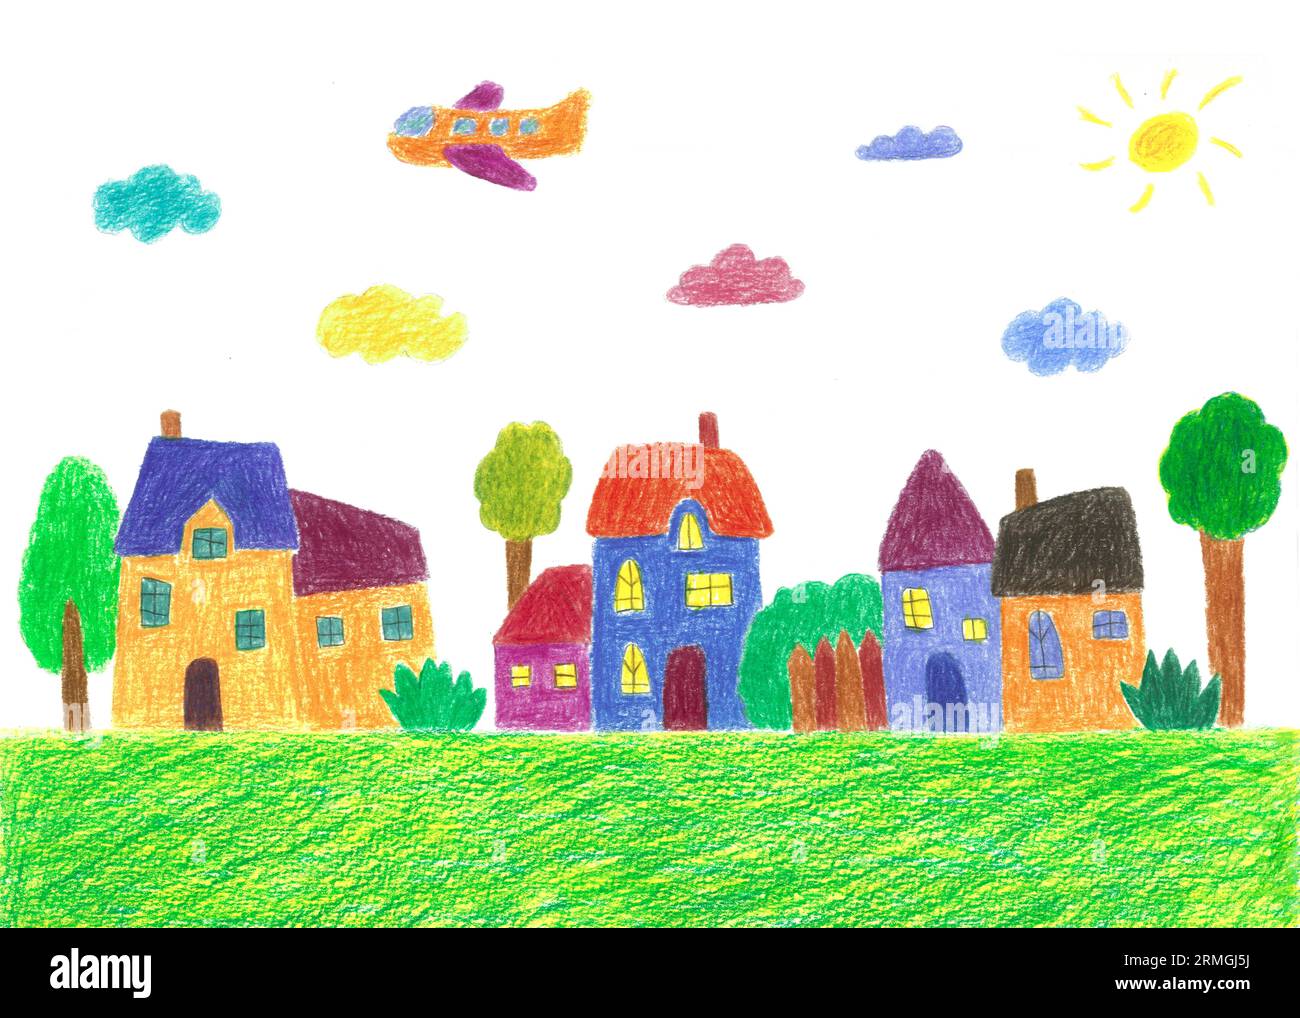 Œuvre d'art pour enfants d'Une scène de ville avec avion, bâtiments, soleil, nuage, arbres Banque D'Images